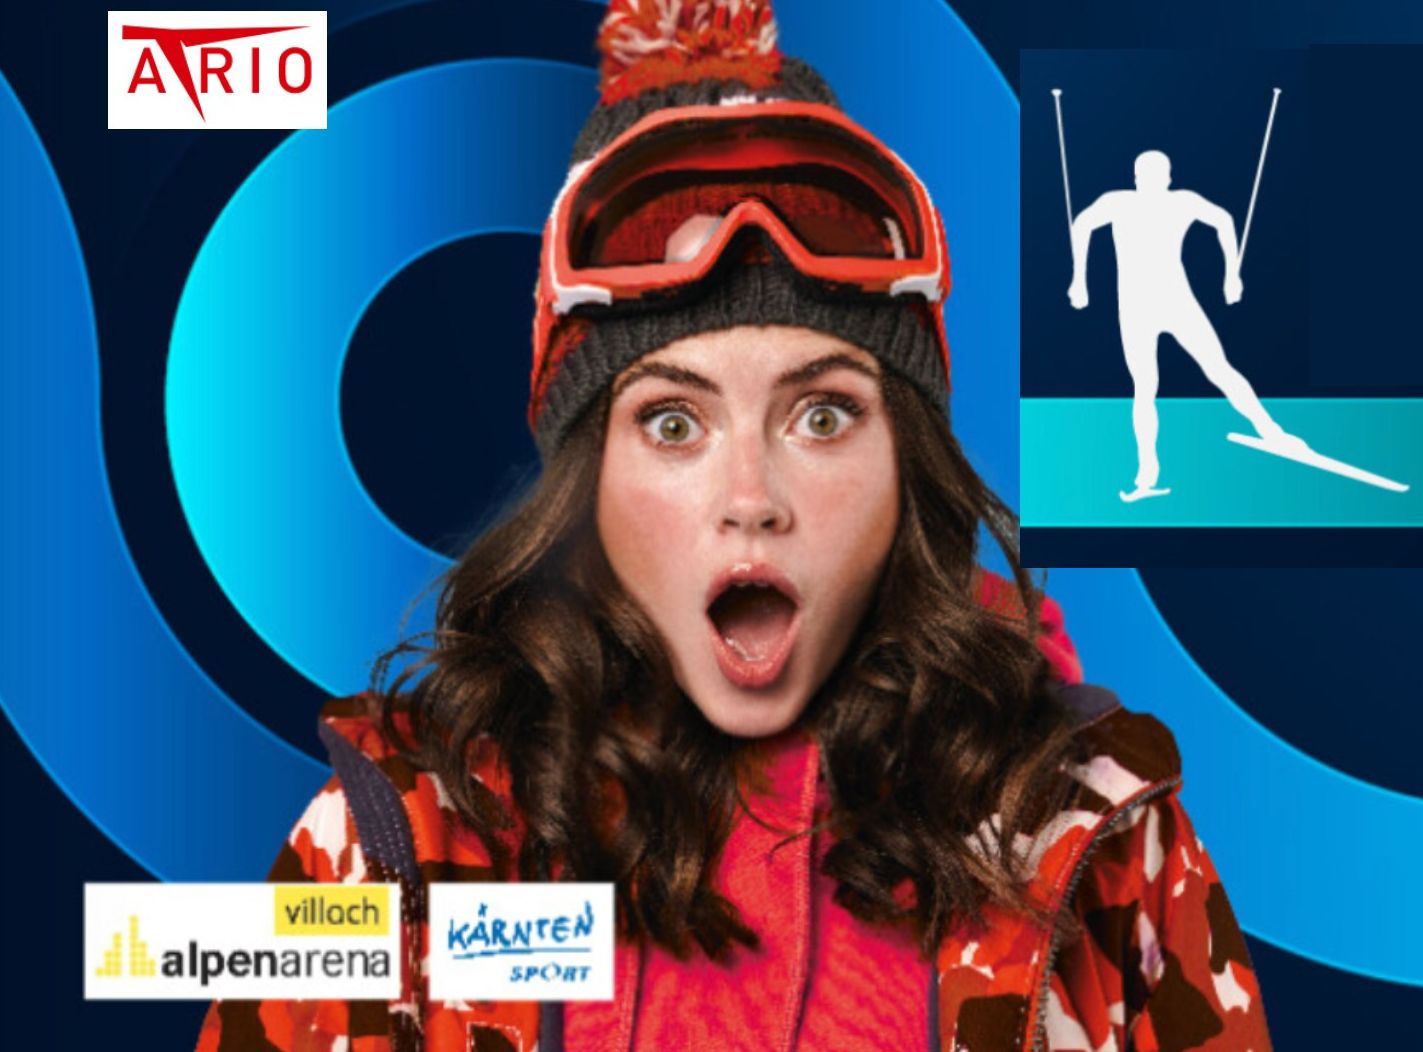 Al momento stai visualizzando Il piacere dello sci di fondo il 2 e il 3 novembre nella Plaza dello shopping center Atrio, a Villach